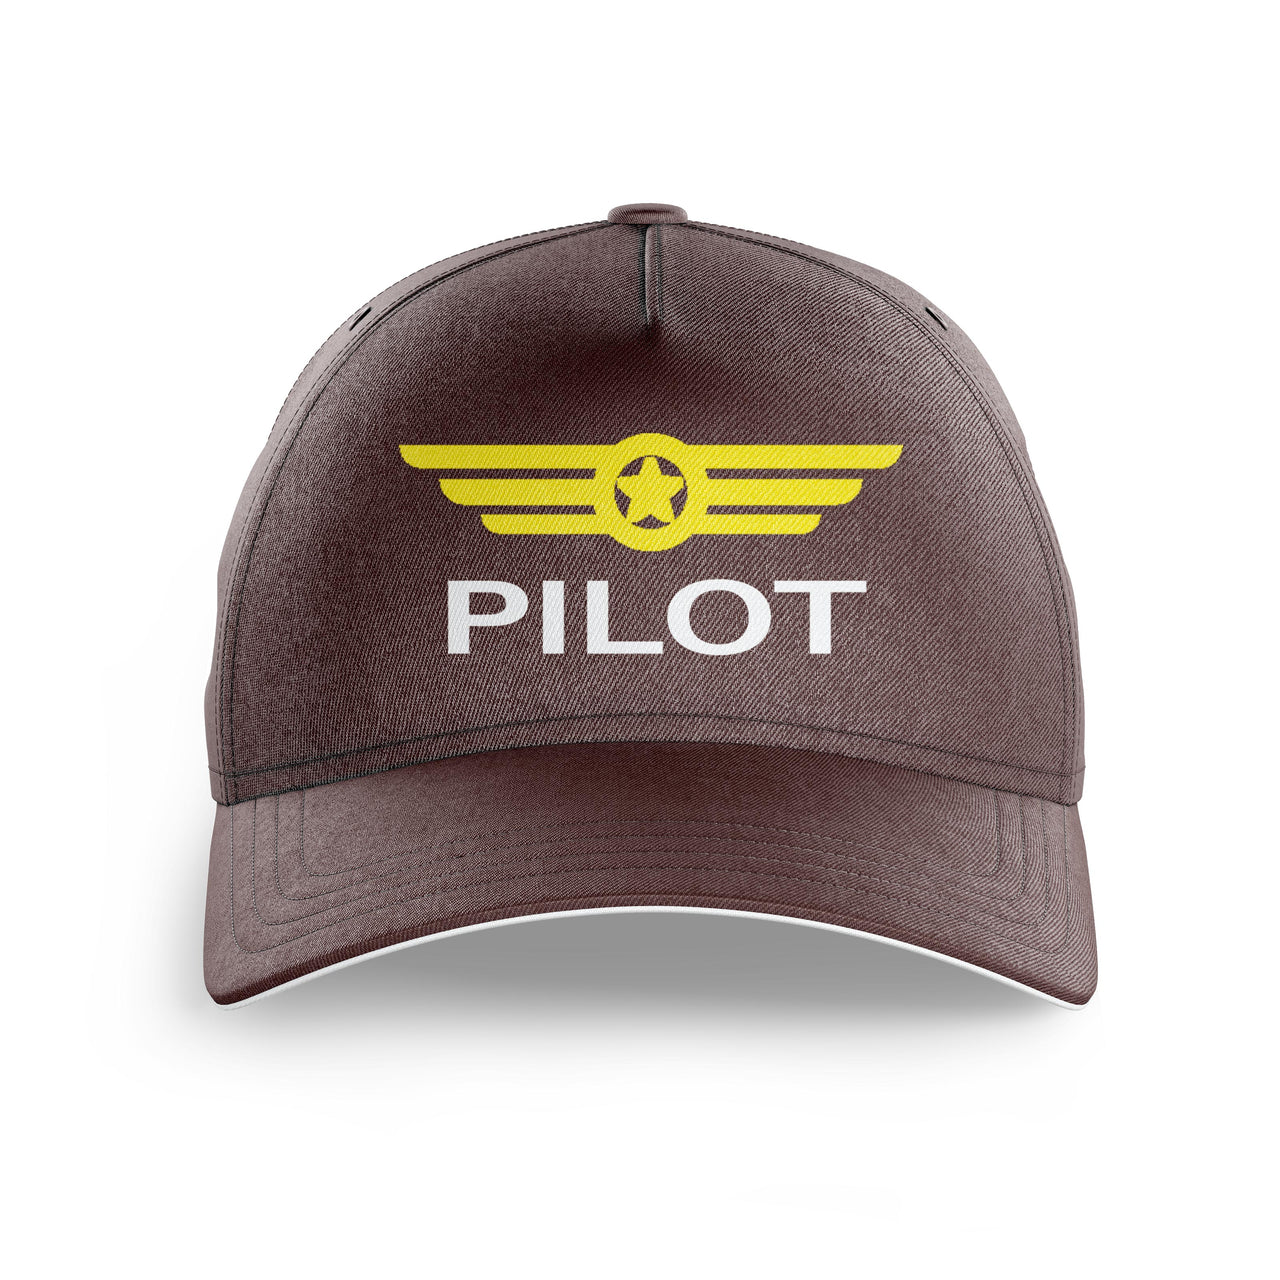 Pilot & Badge Printed Hats